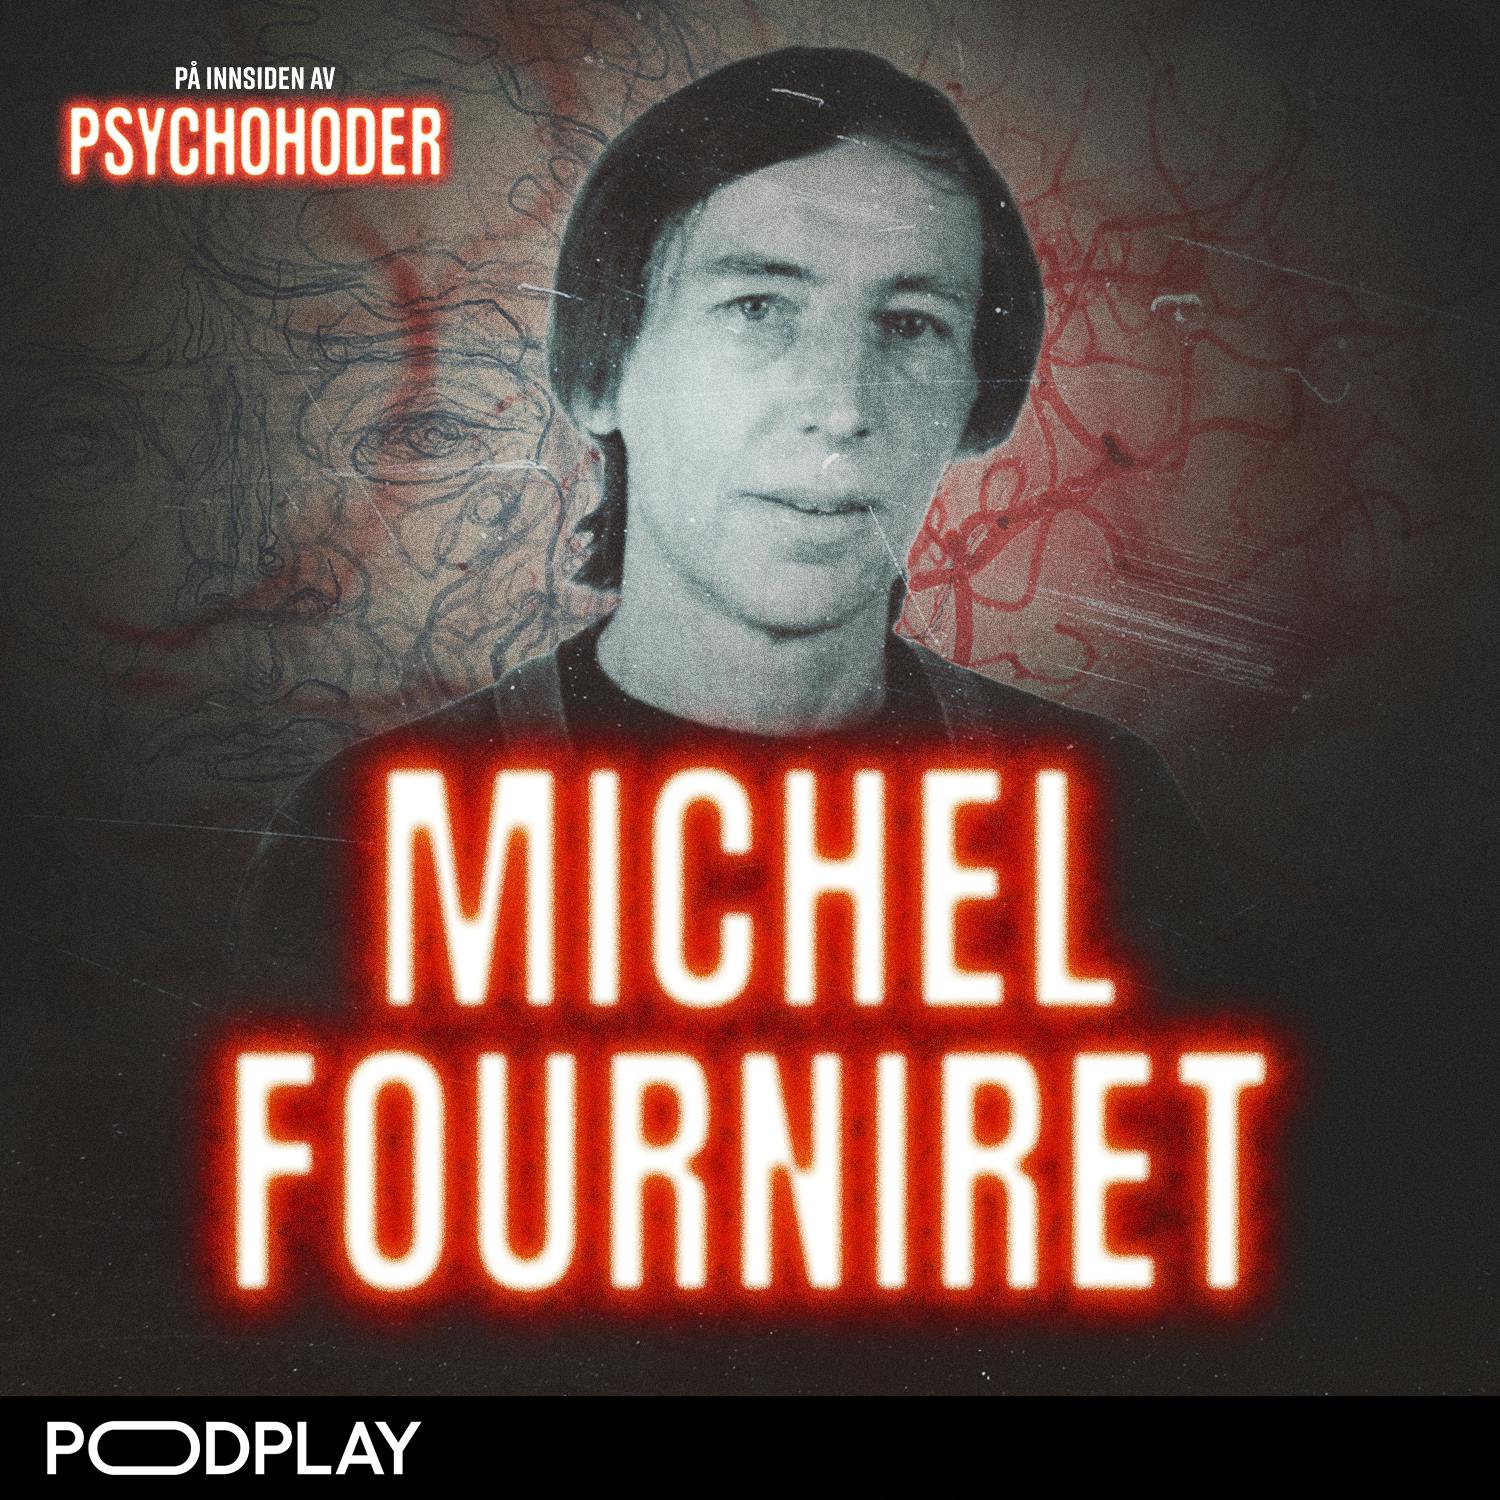 Michael Fourniret – voldtok og drepte jomfruer sammen med sin kone